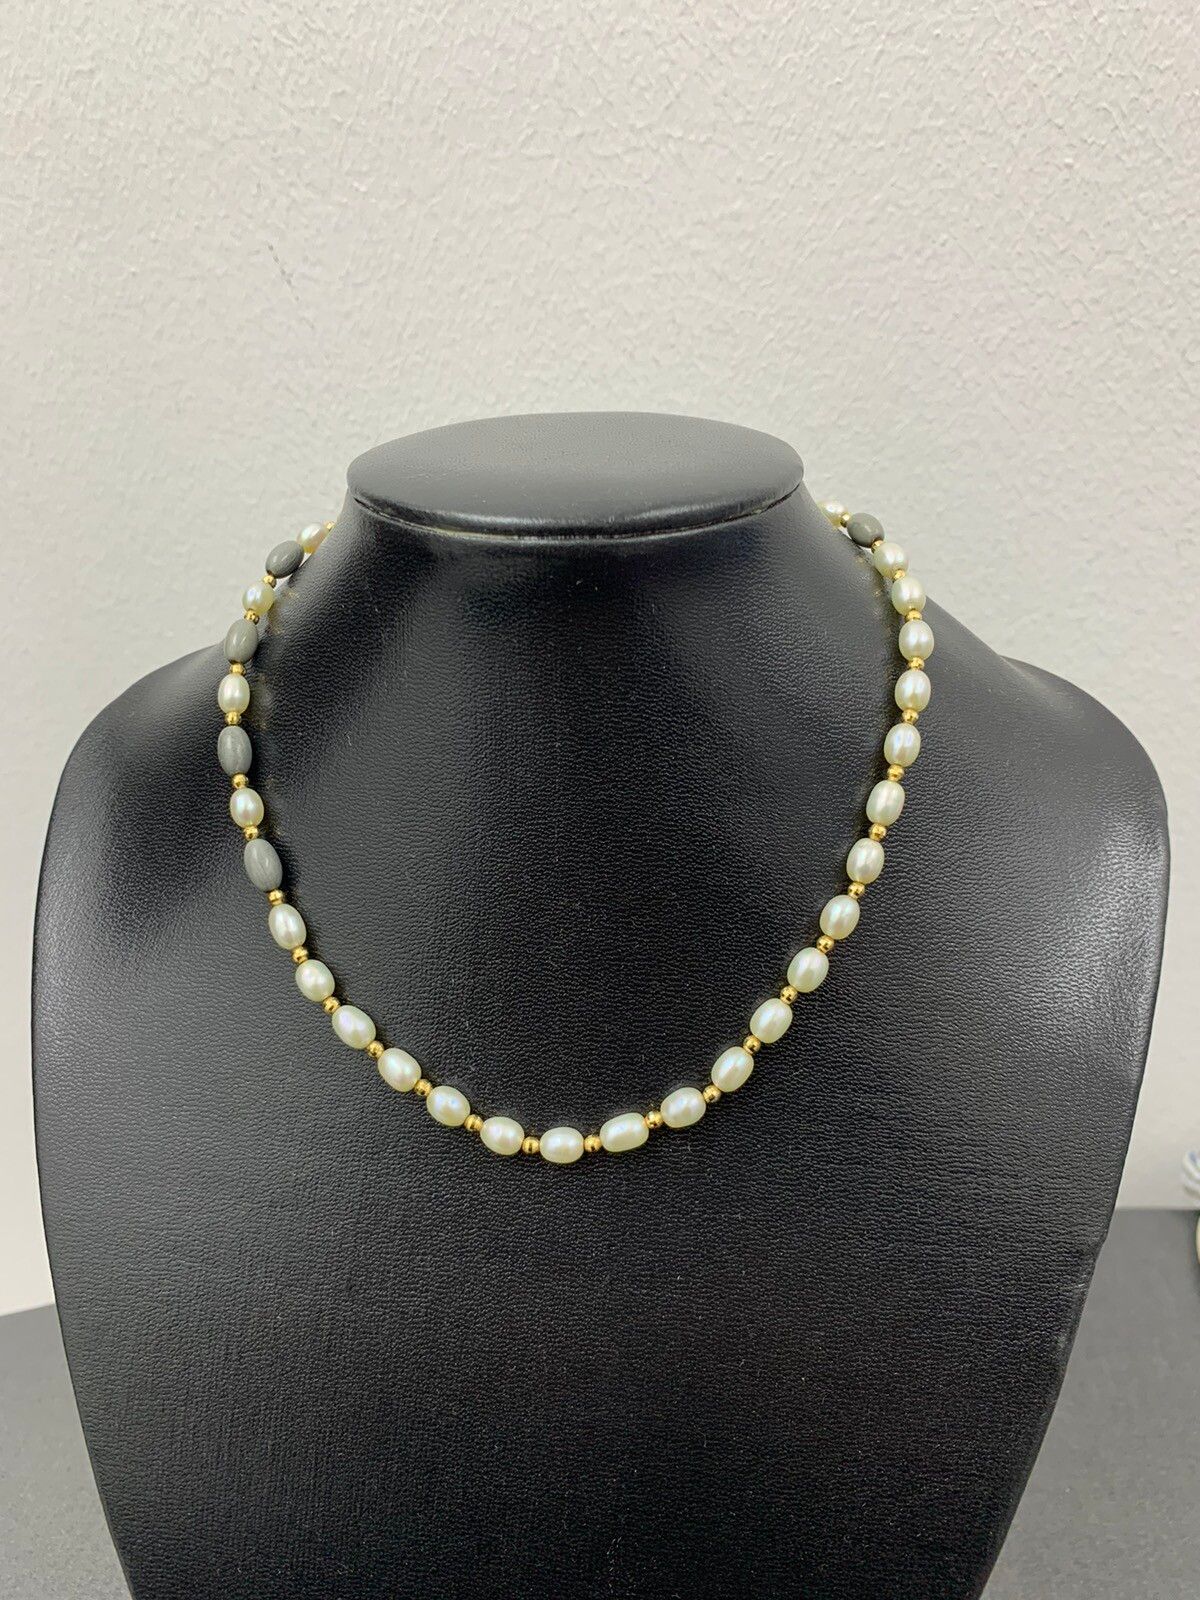 Vintage 18K Gold Natural Pearls Necklace - 1